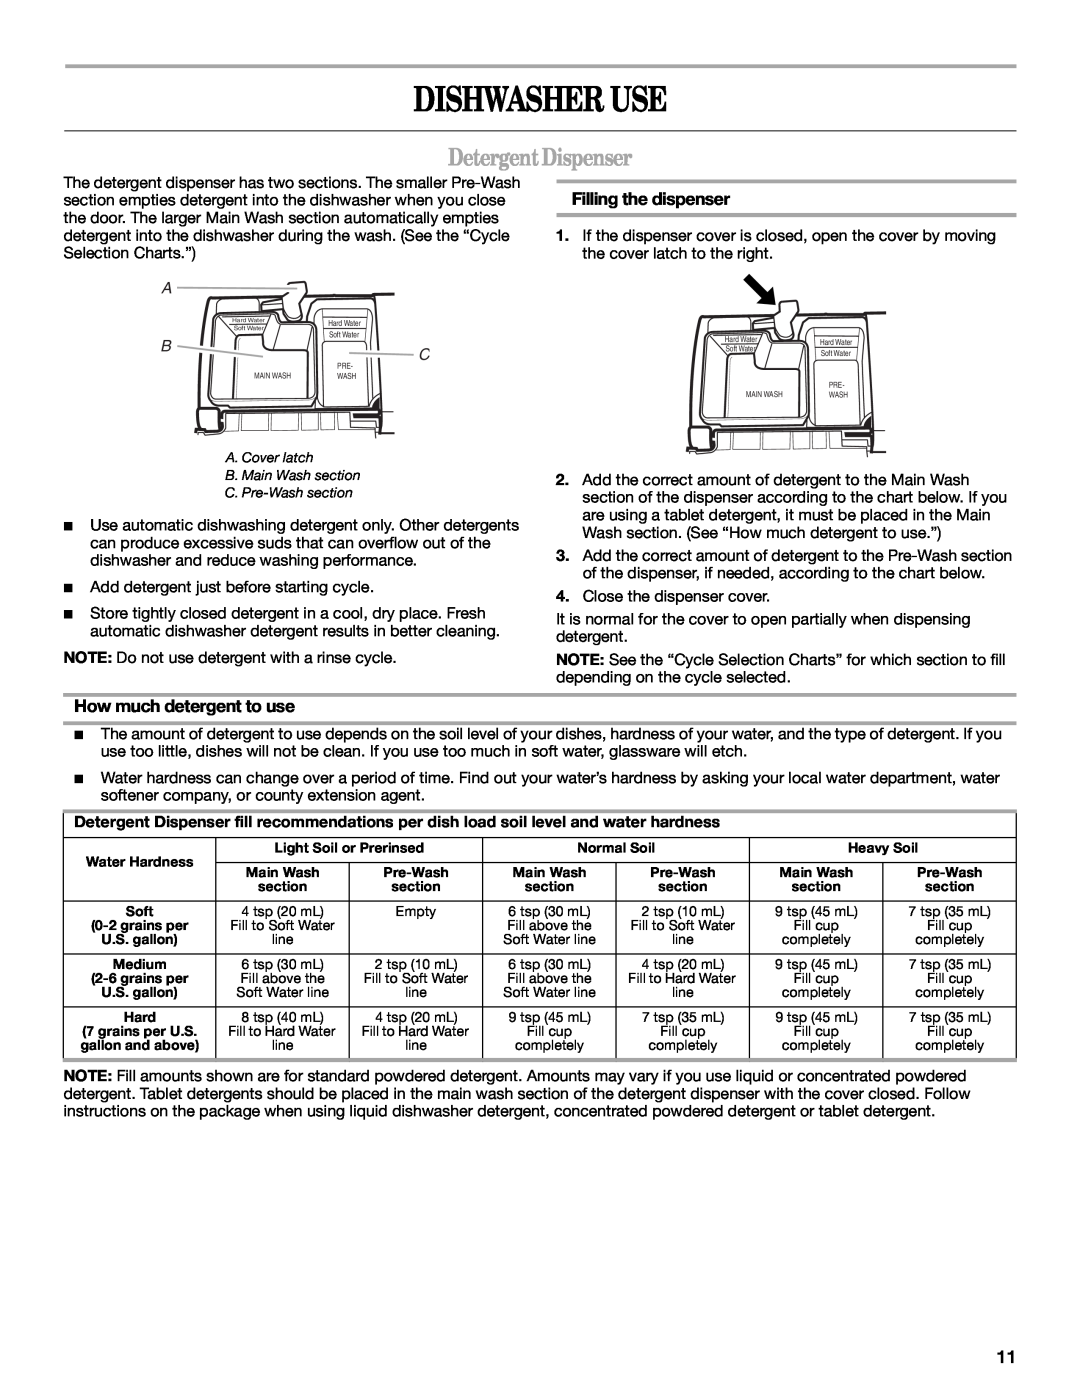 Whirlpool DU1200, DU1148, DU1145 manual Dishwasher Use, DetergentDispenser, Filling the dispenser, How much detergent to use 